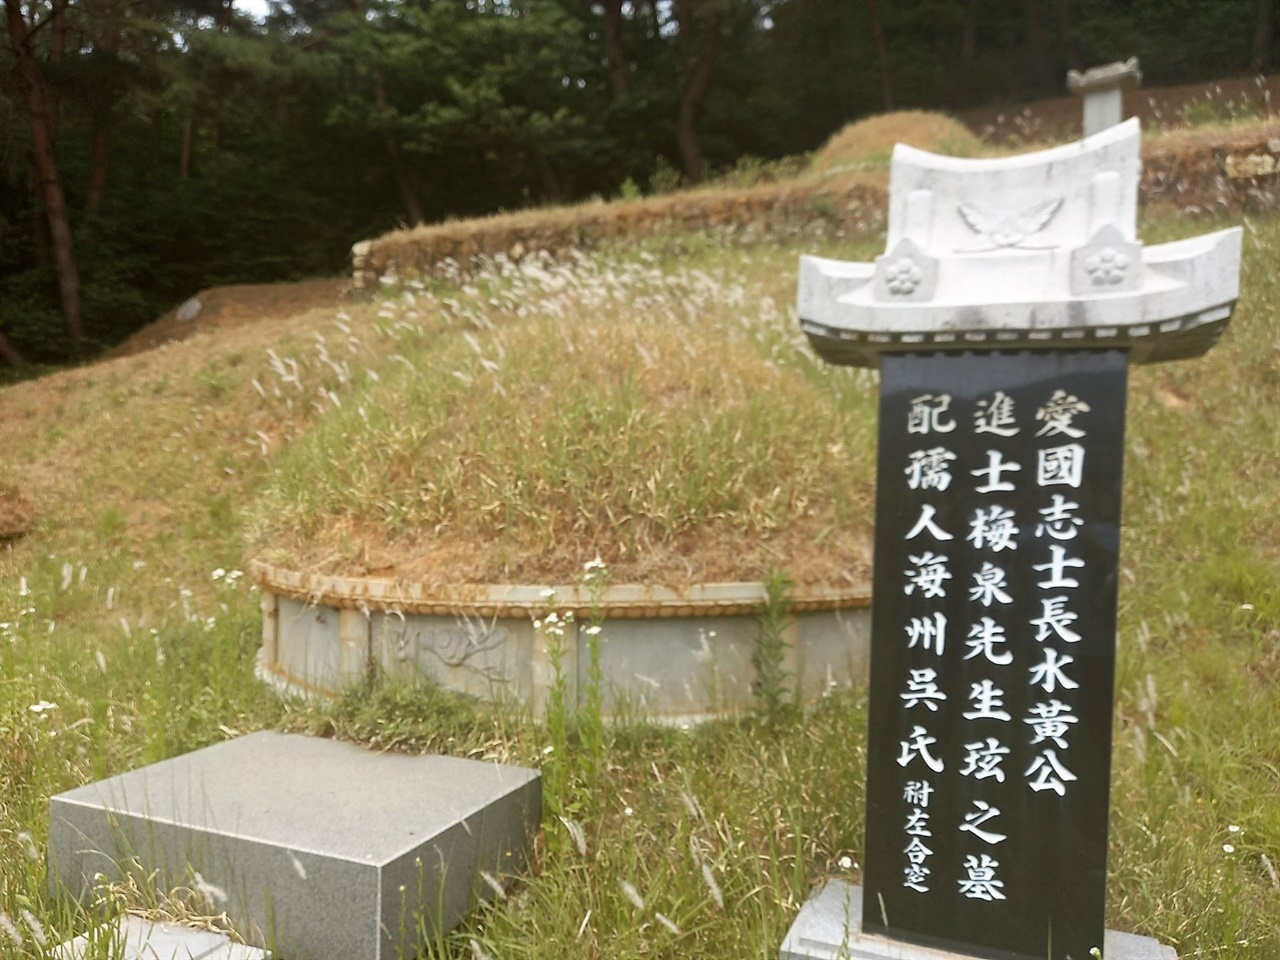 황현의 묘소가 자리한 매천 유적공원은 웃자란 잡풀더미에 봉분 앞 상석조차 덮일 정도로 관리가 되지 않고 있었다. 